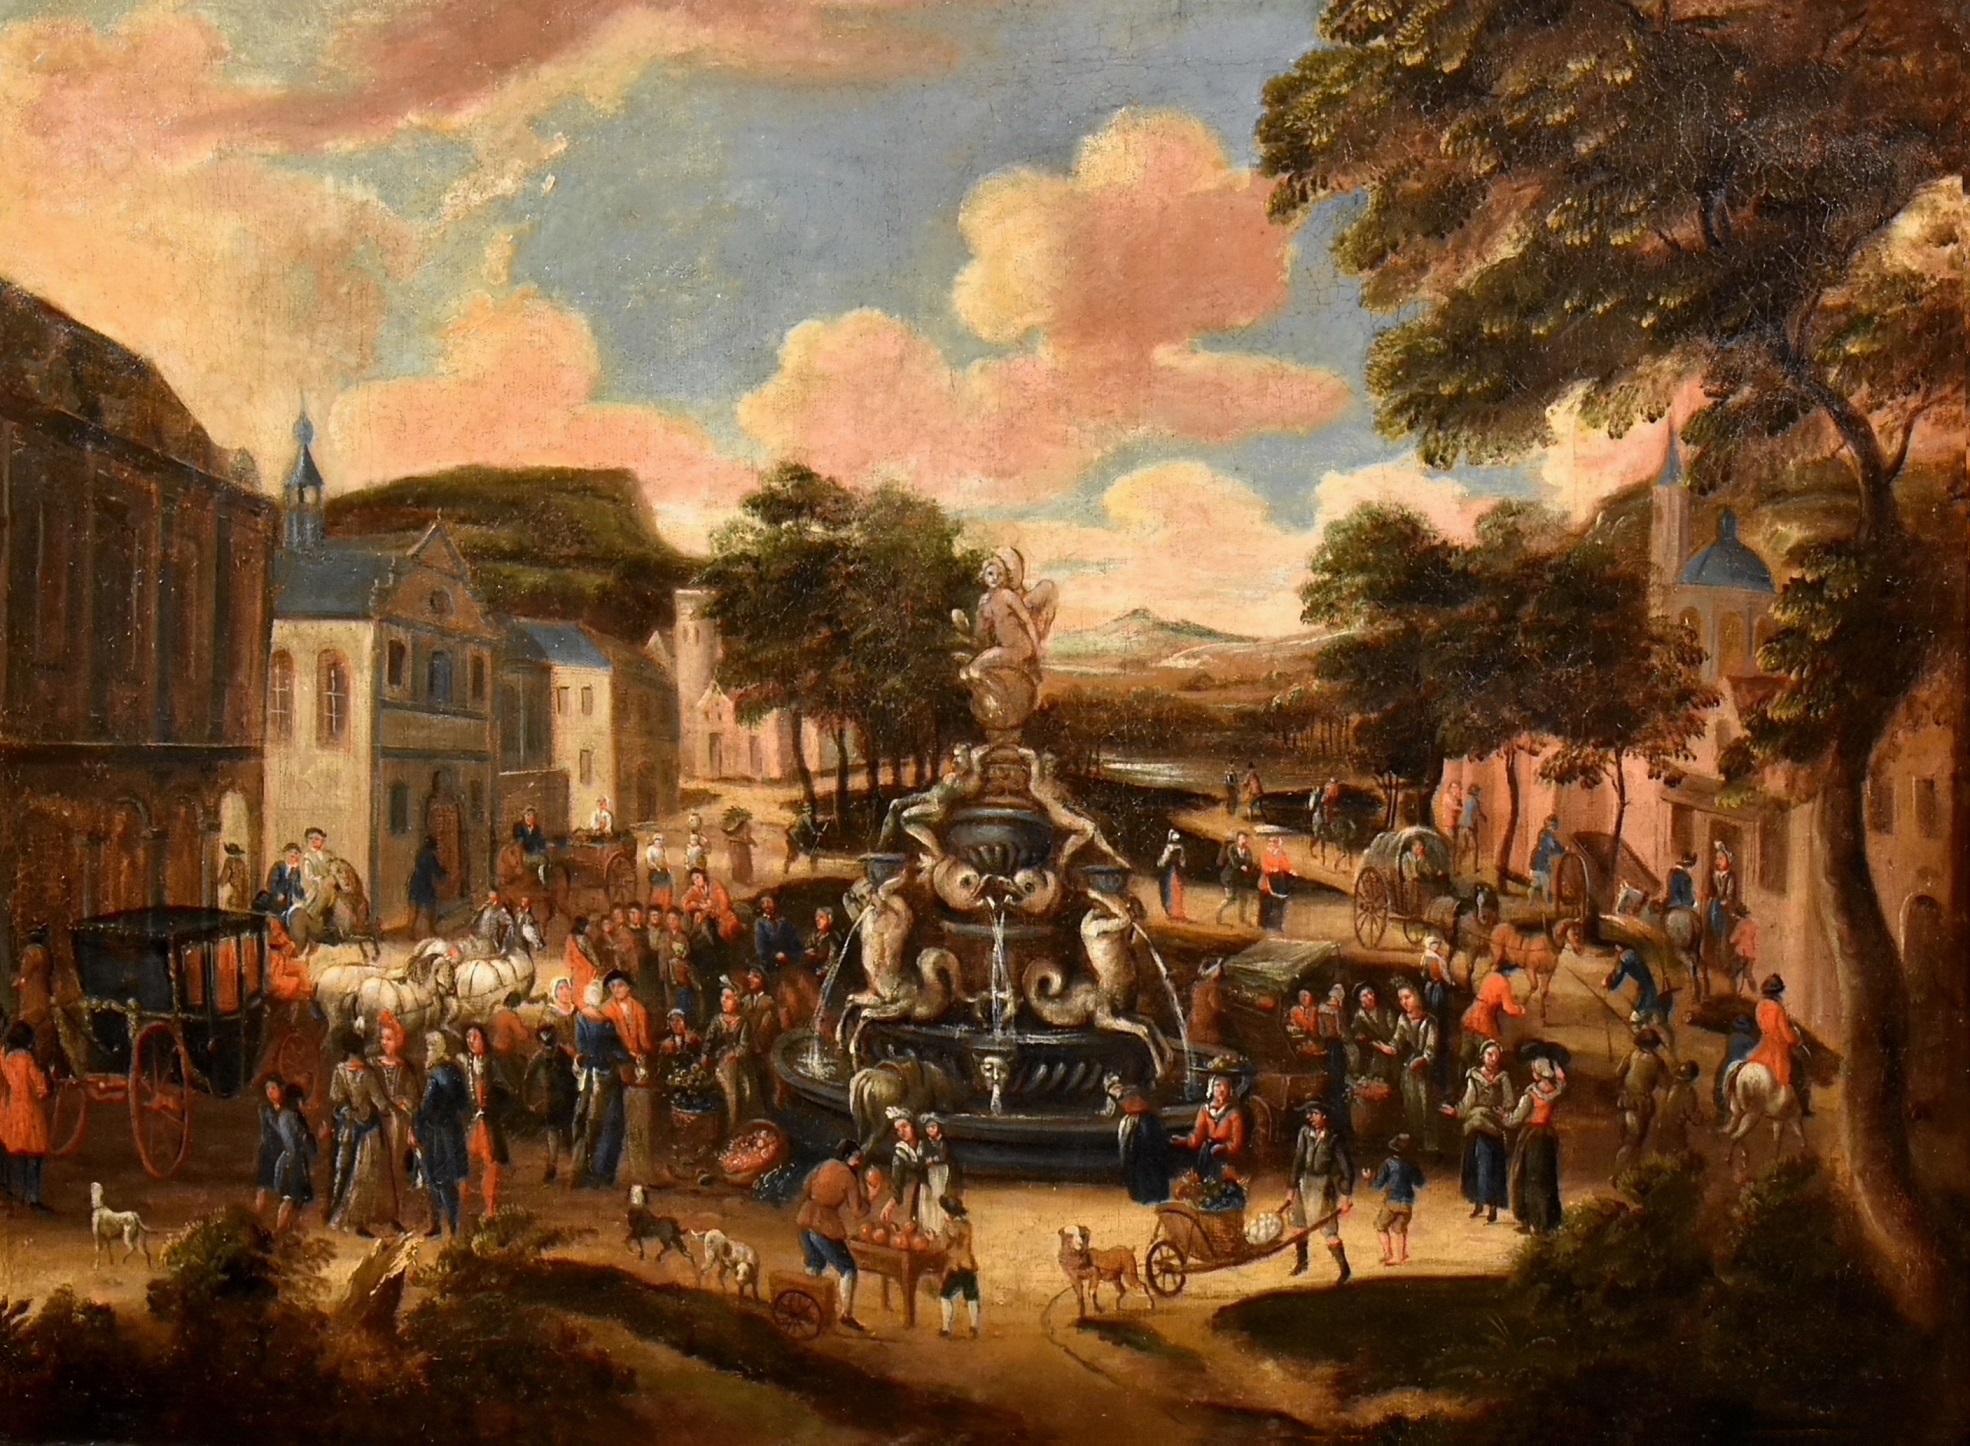 Landschaft, Dorfmarkt, Gemälde Öl auf Leinwand, Alter Meister, flämische Kunst, 18. Jahrhundert (Alte Meister), Painting, von Circle of Pieter van Bredael (Antwerp 1629 - 1719)